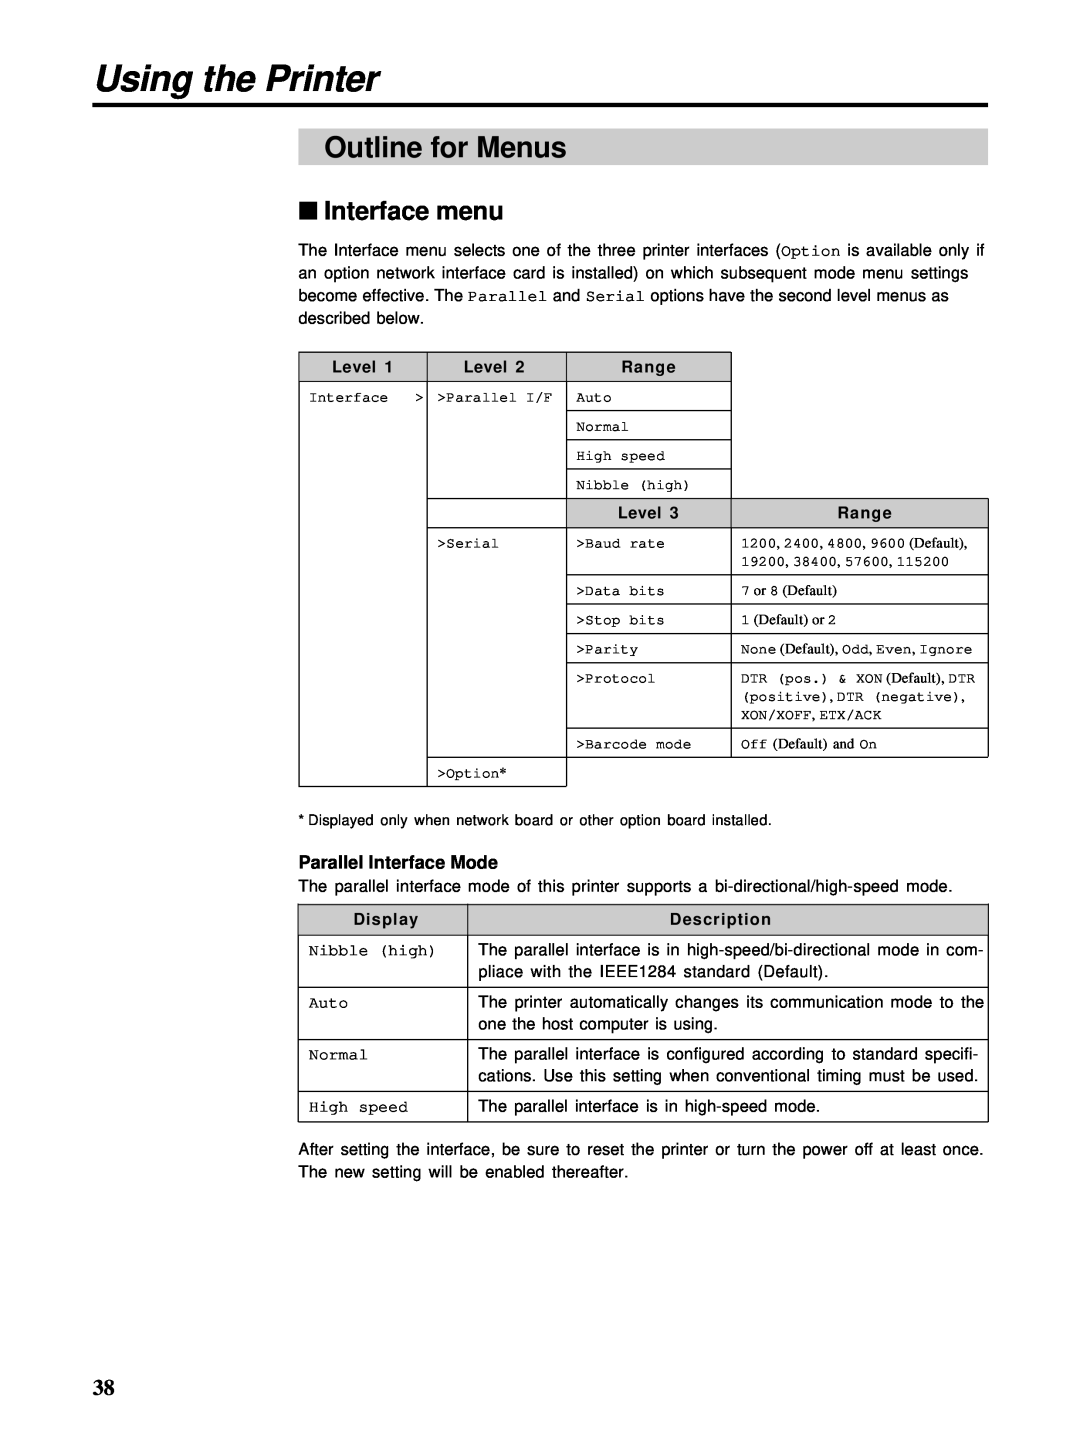 HP Ci 1100 manual Outline for Menus, Interface menu, Using the Printer 